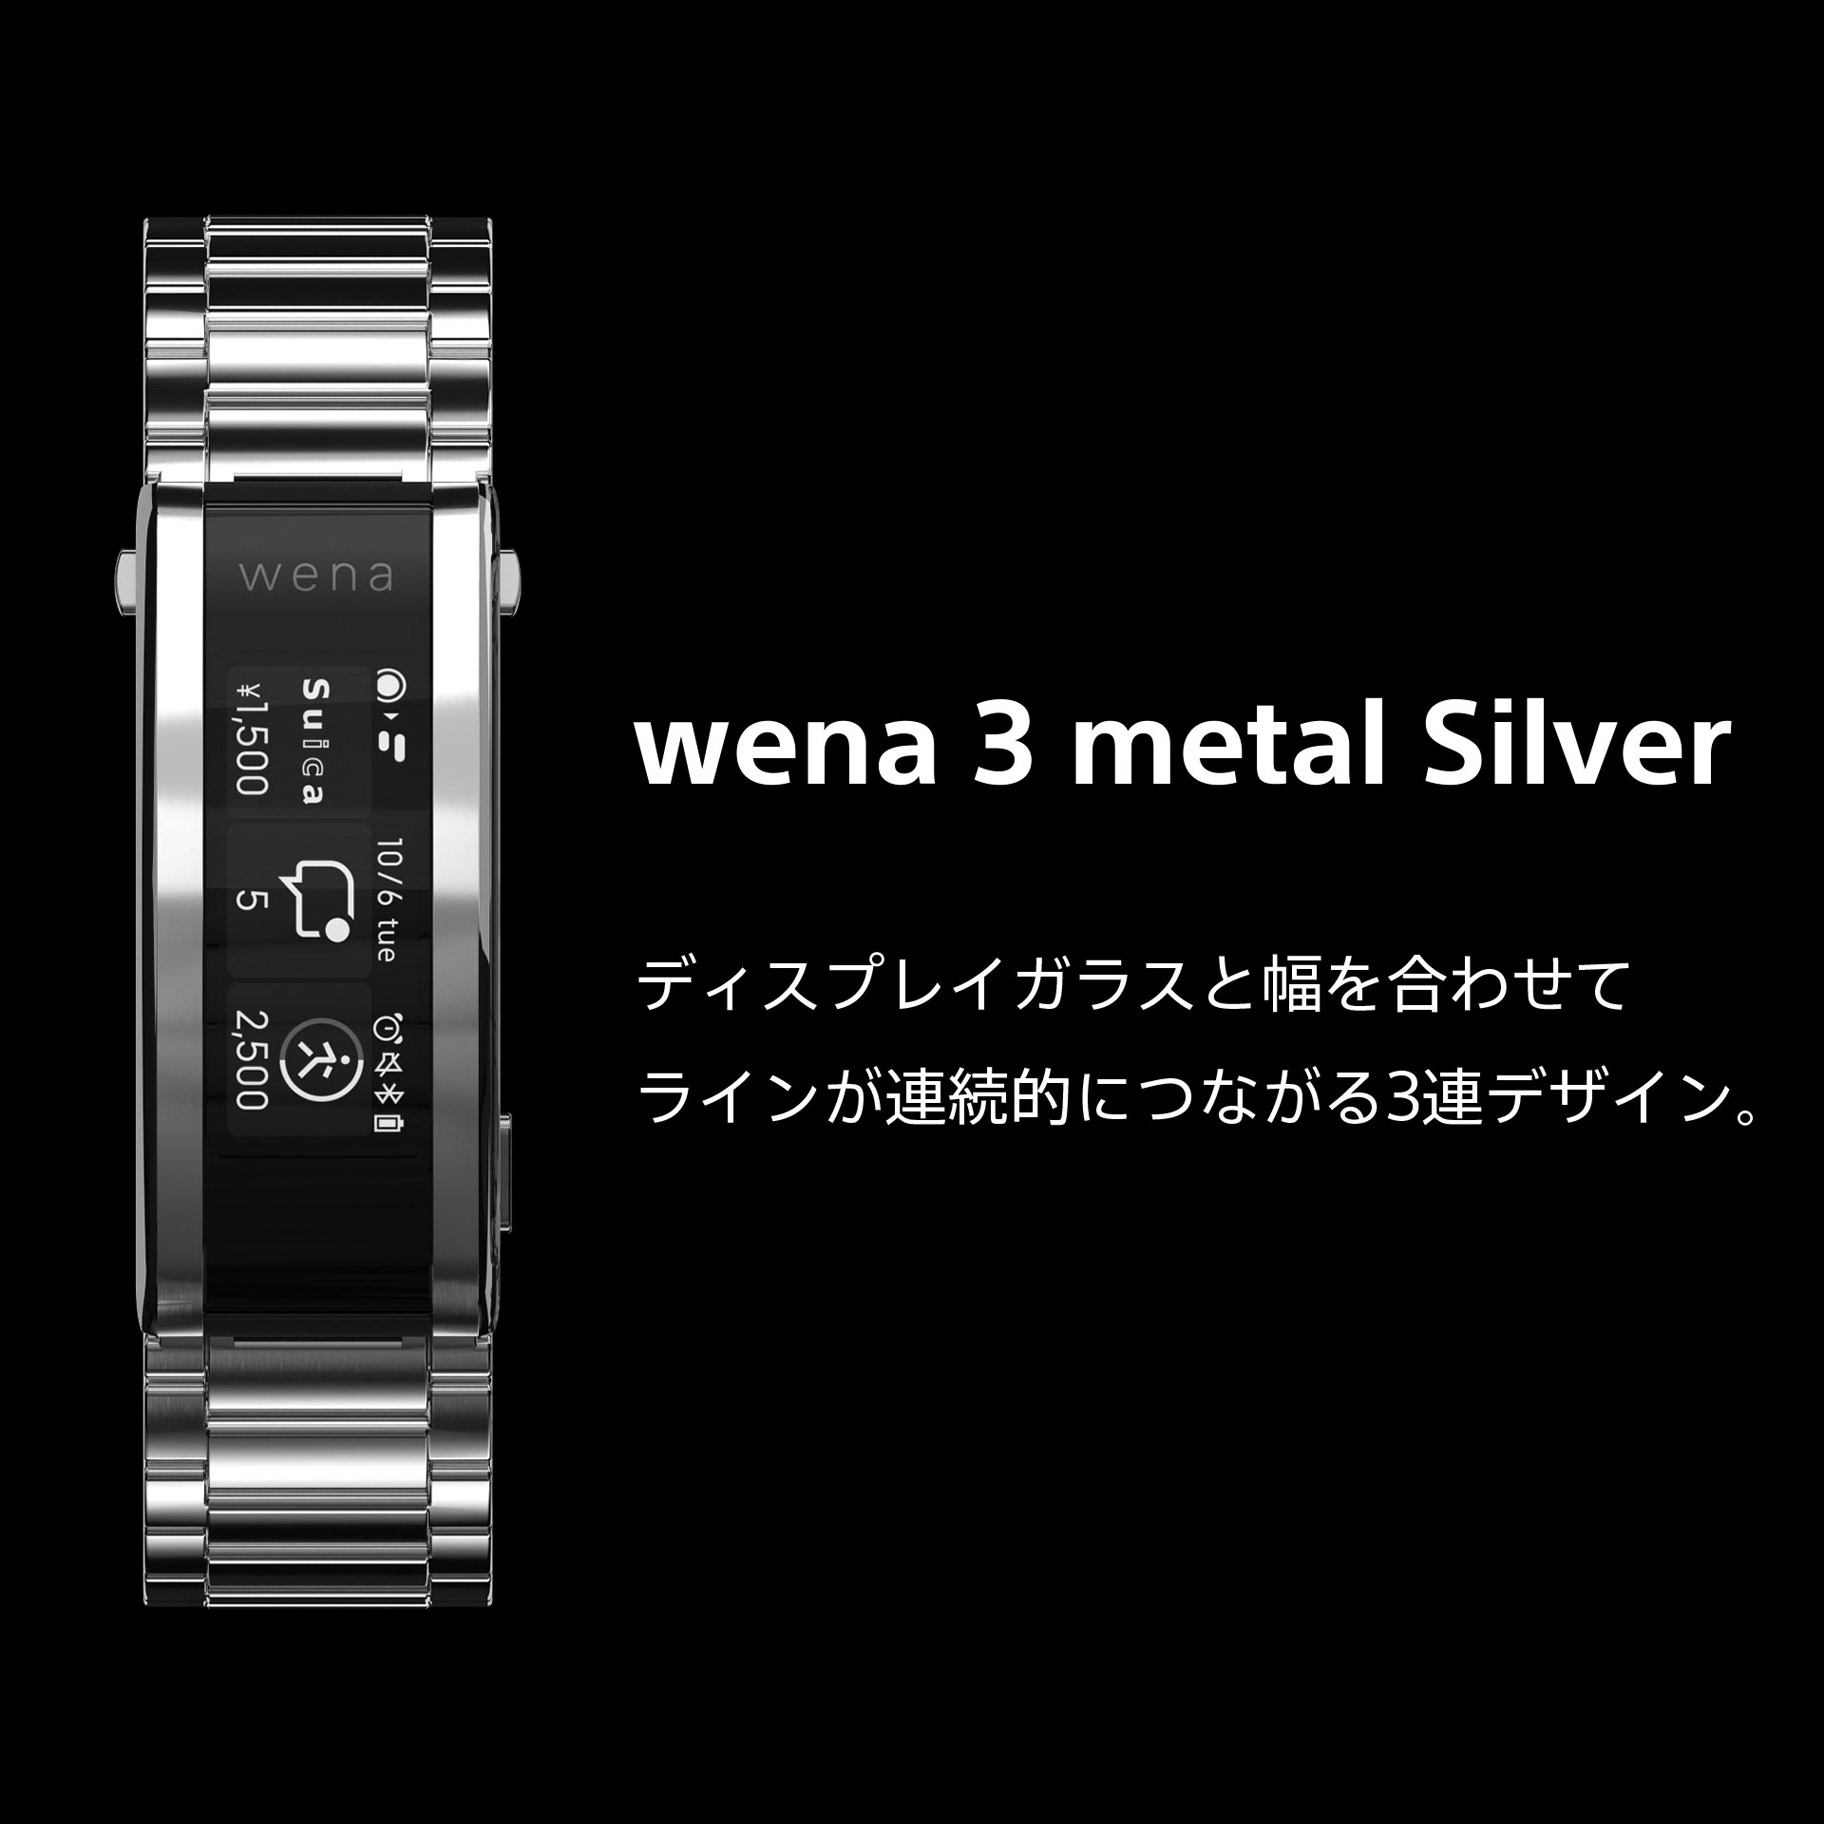 ソニー WNW-B21A S wena 3 metal Silver シルバー